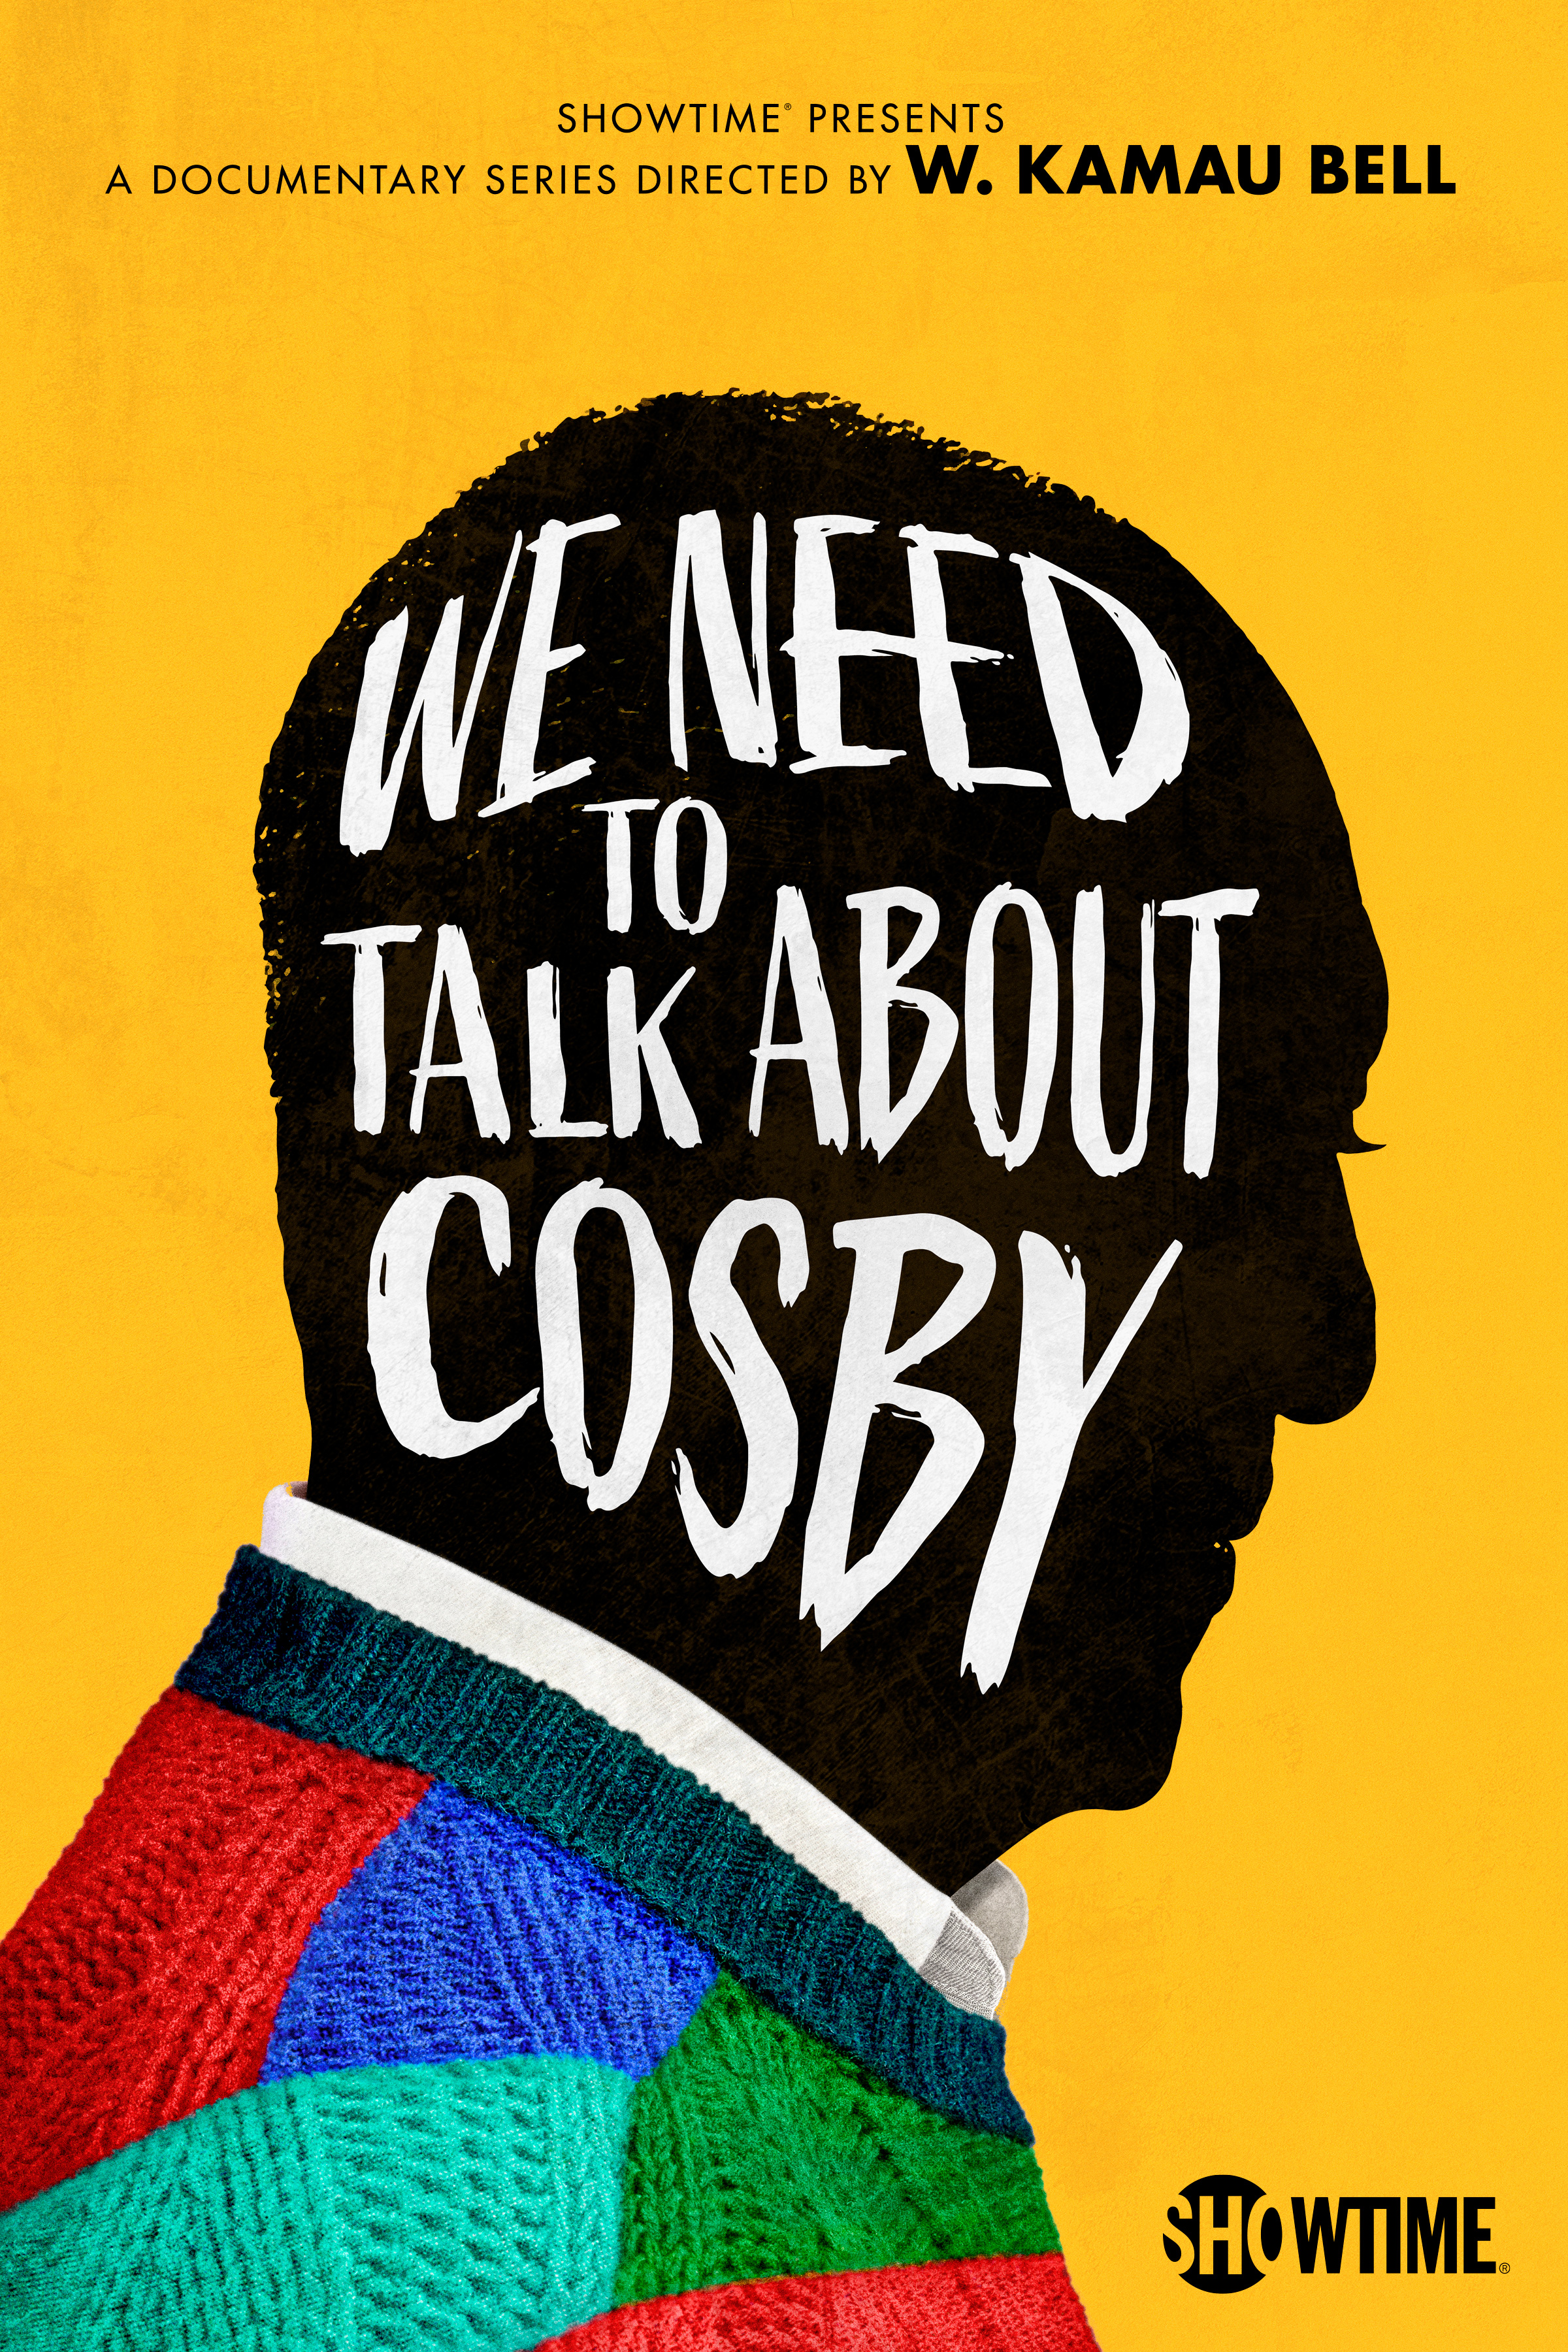     Musimy porozmawiać o Cosbym